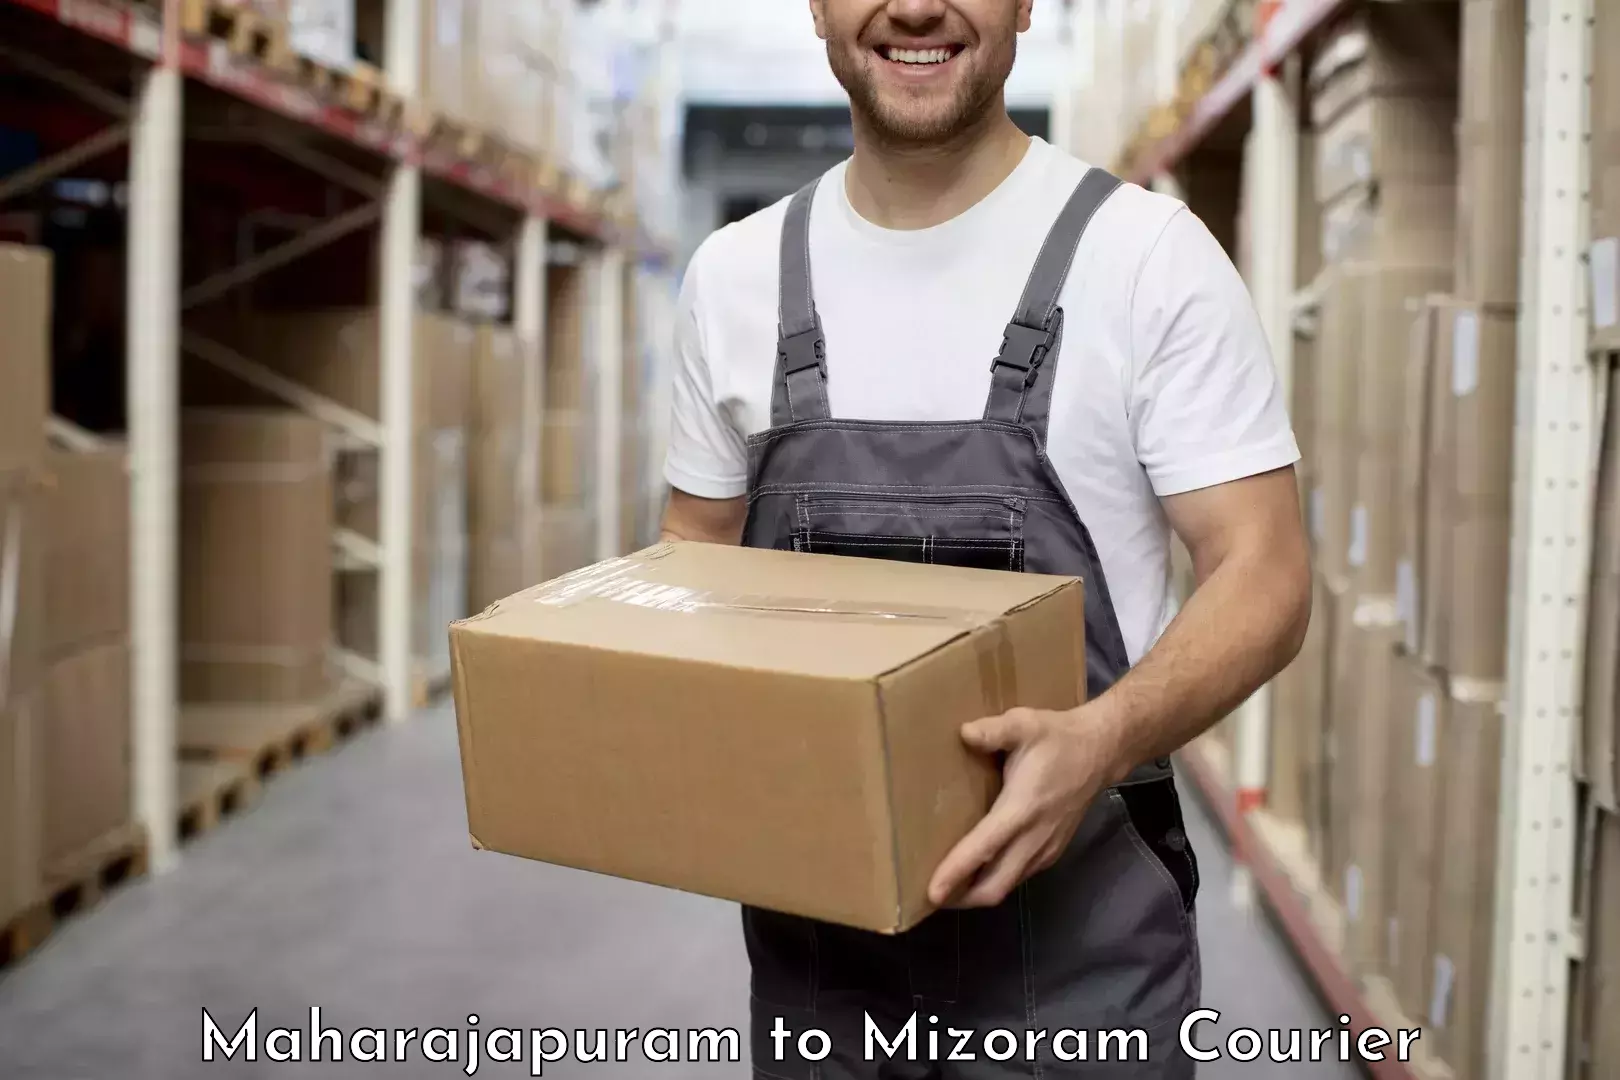 Cargo delivery service Maharajapuram to Aizawl